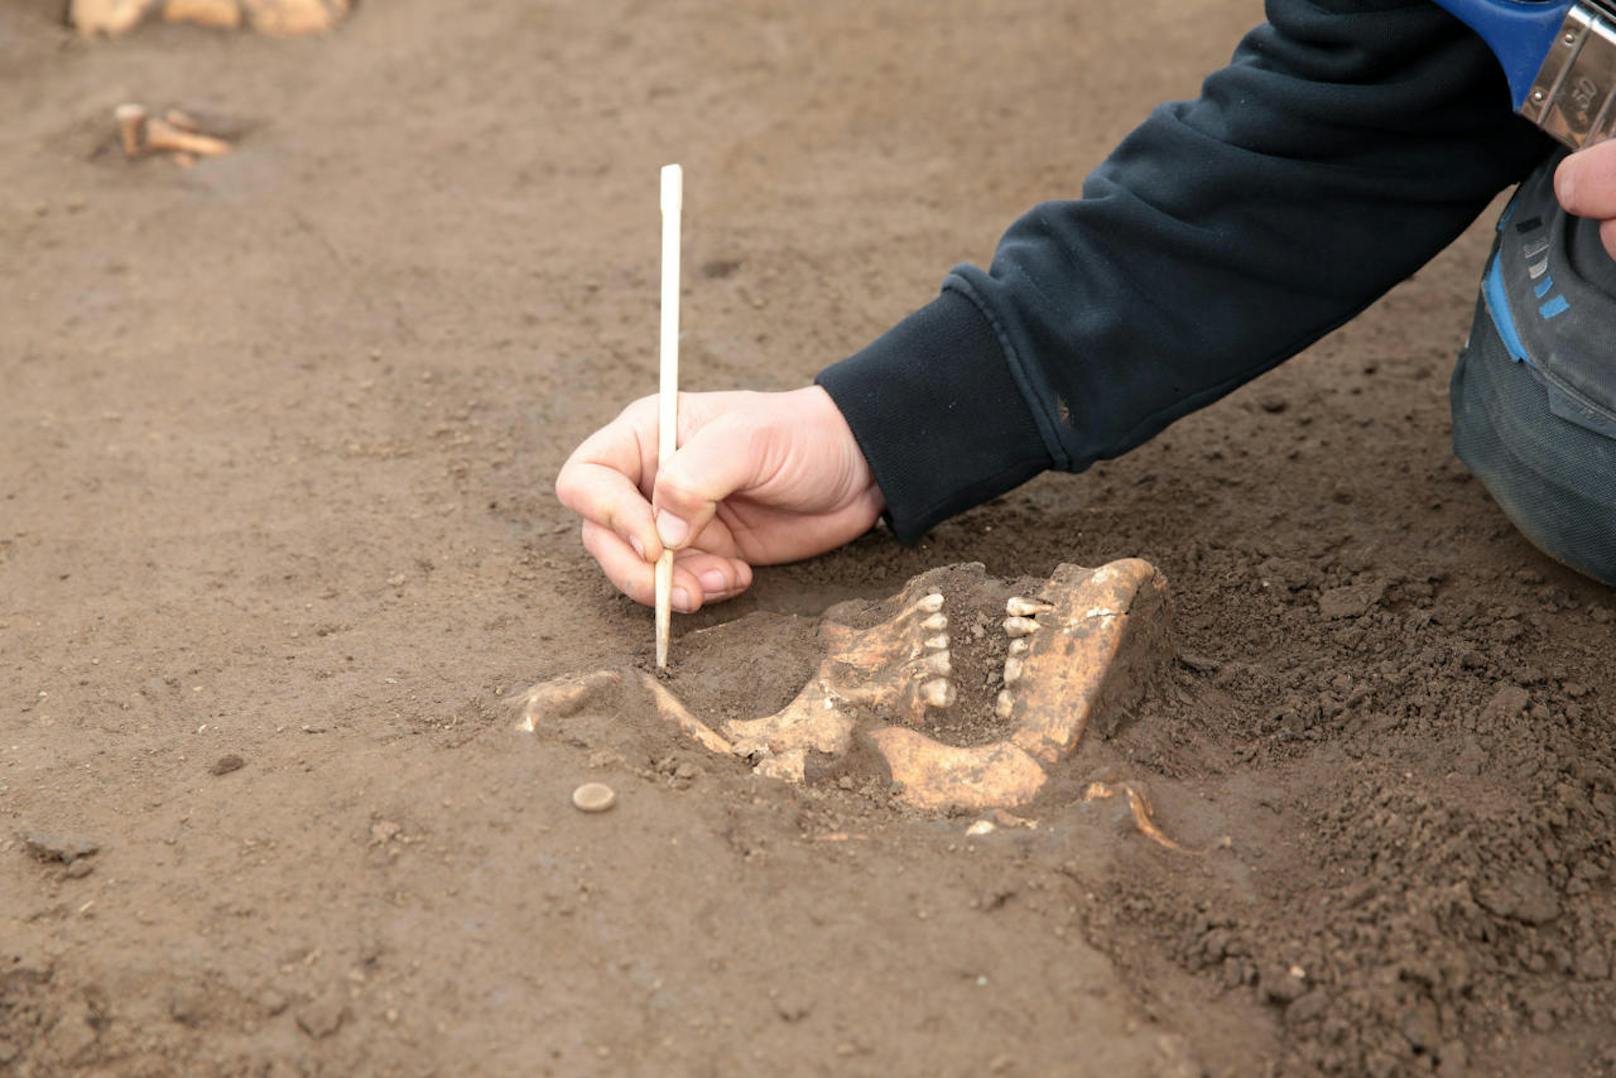 Sensation in NÖ: Bei Ausgrabungen wurden Skelette und Kriegsüberreste der "Schlacht bei Wagram" entdeckt.